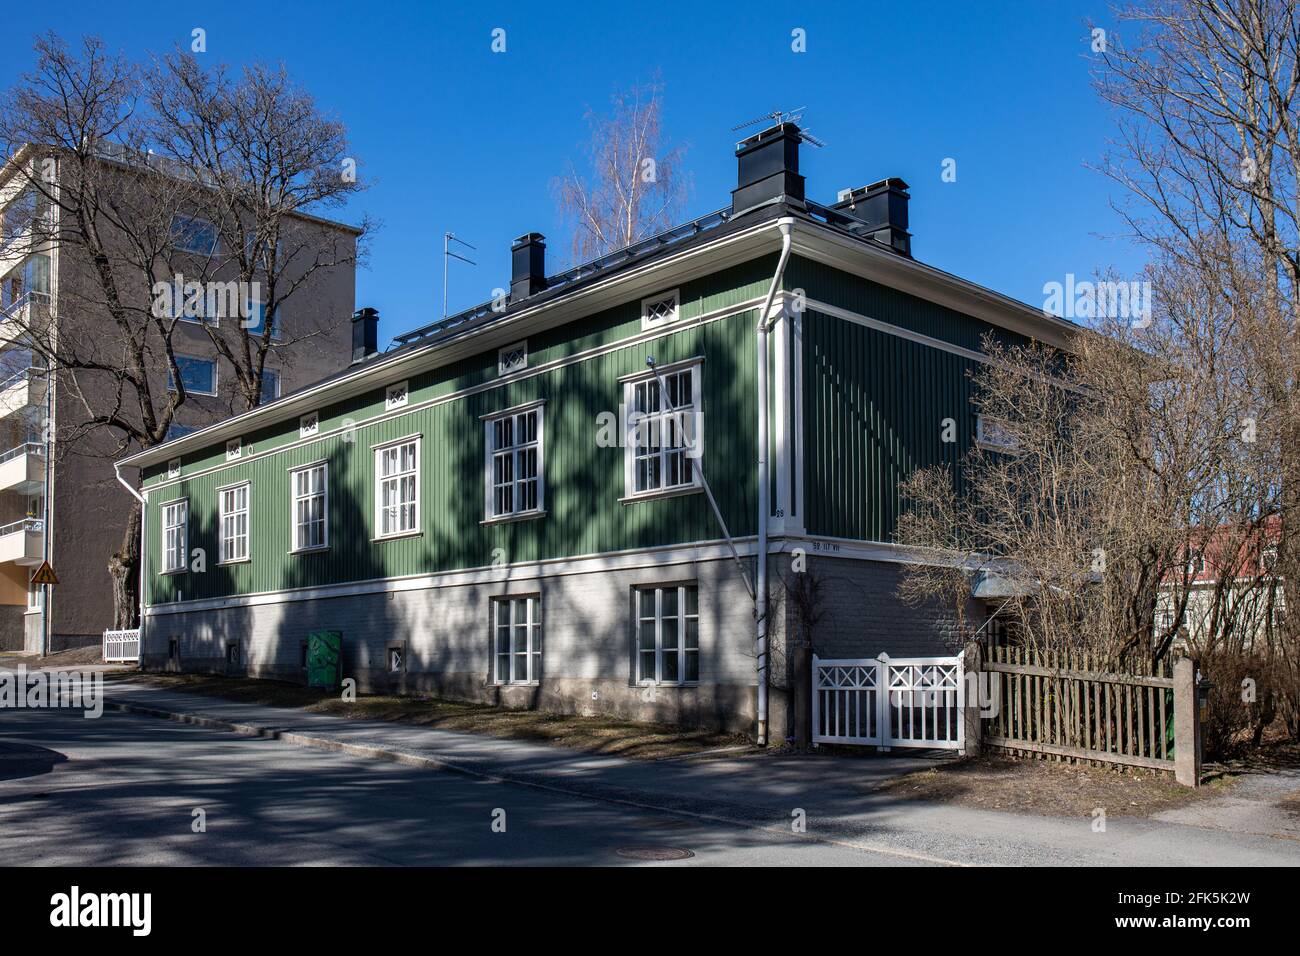 Maison ou bâtiment résidentiel traditionnel en bois vert dans le quartier Pyynikki de Tampere, Finalnd Banque D'Images